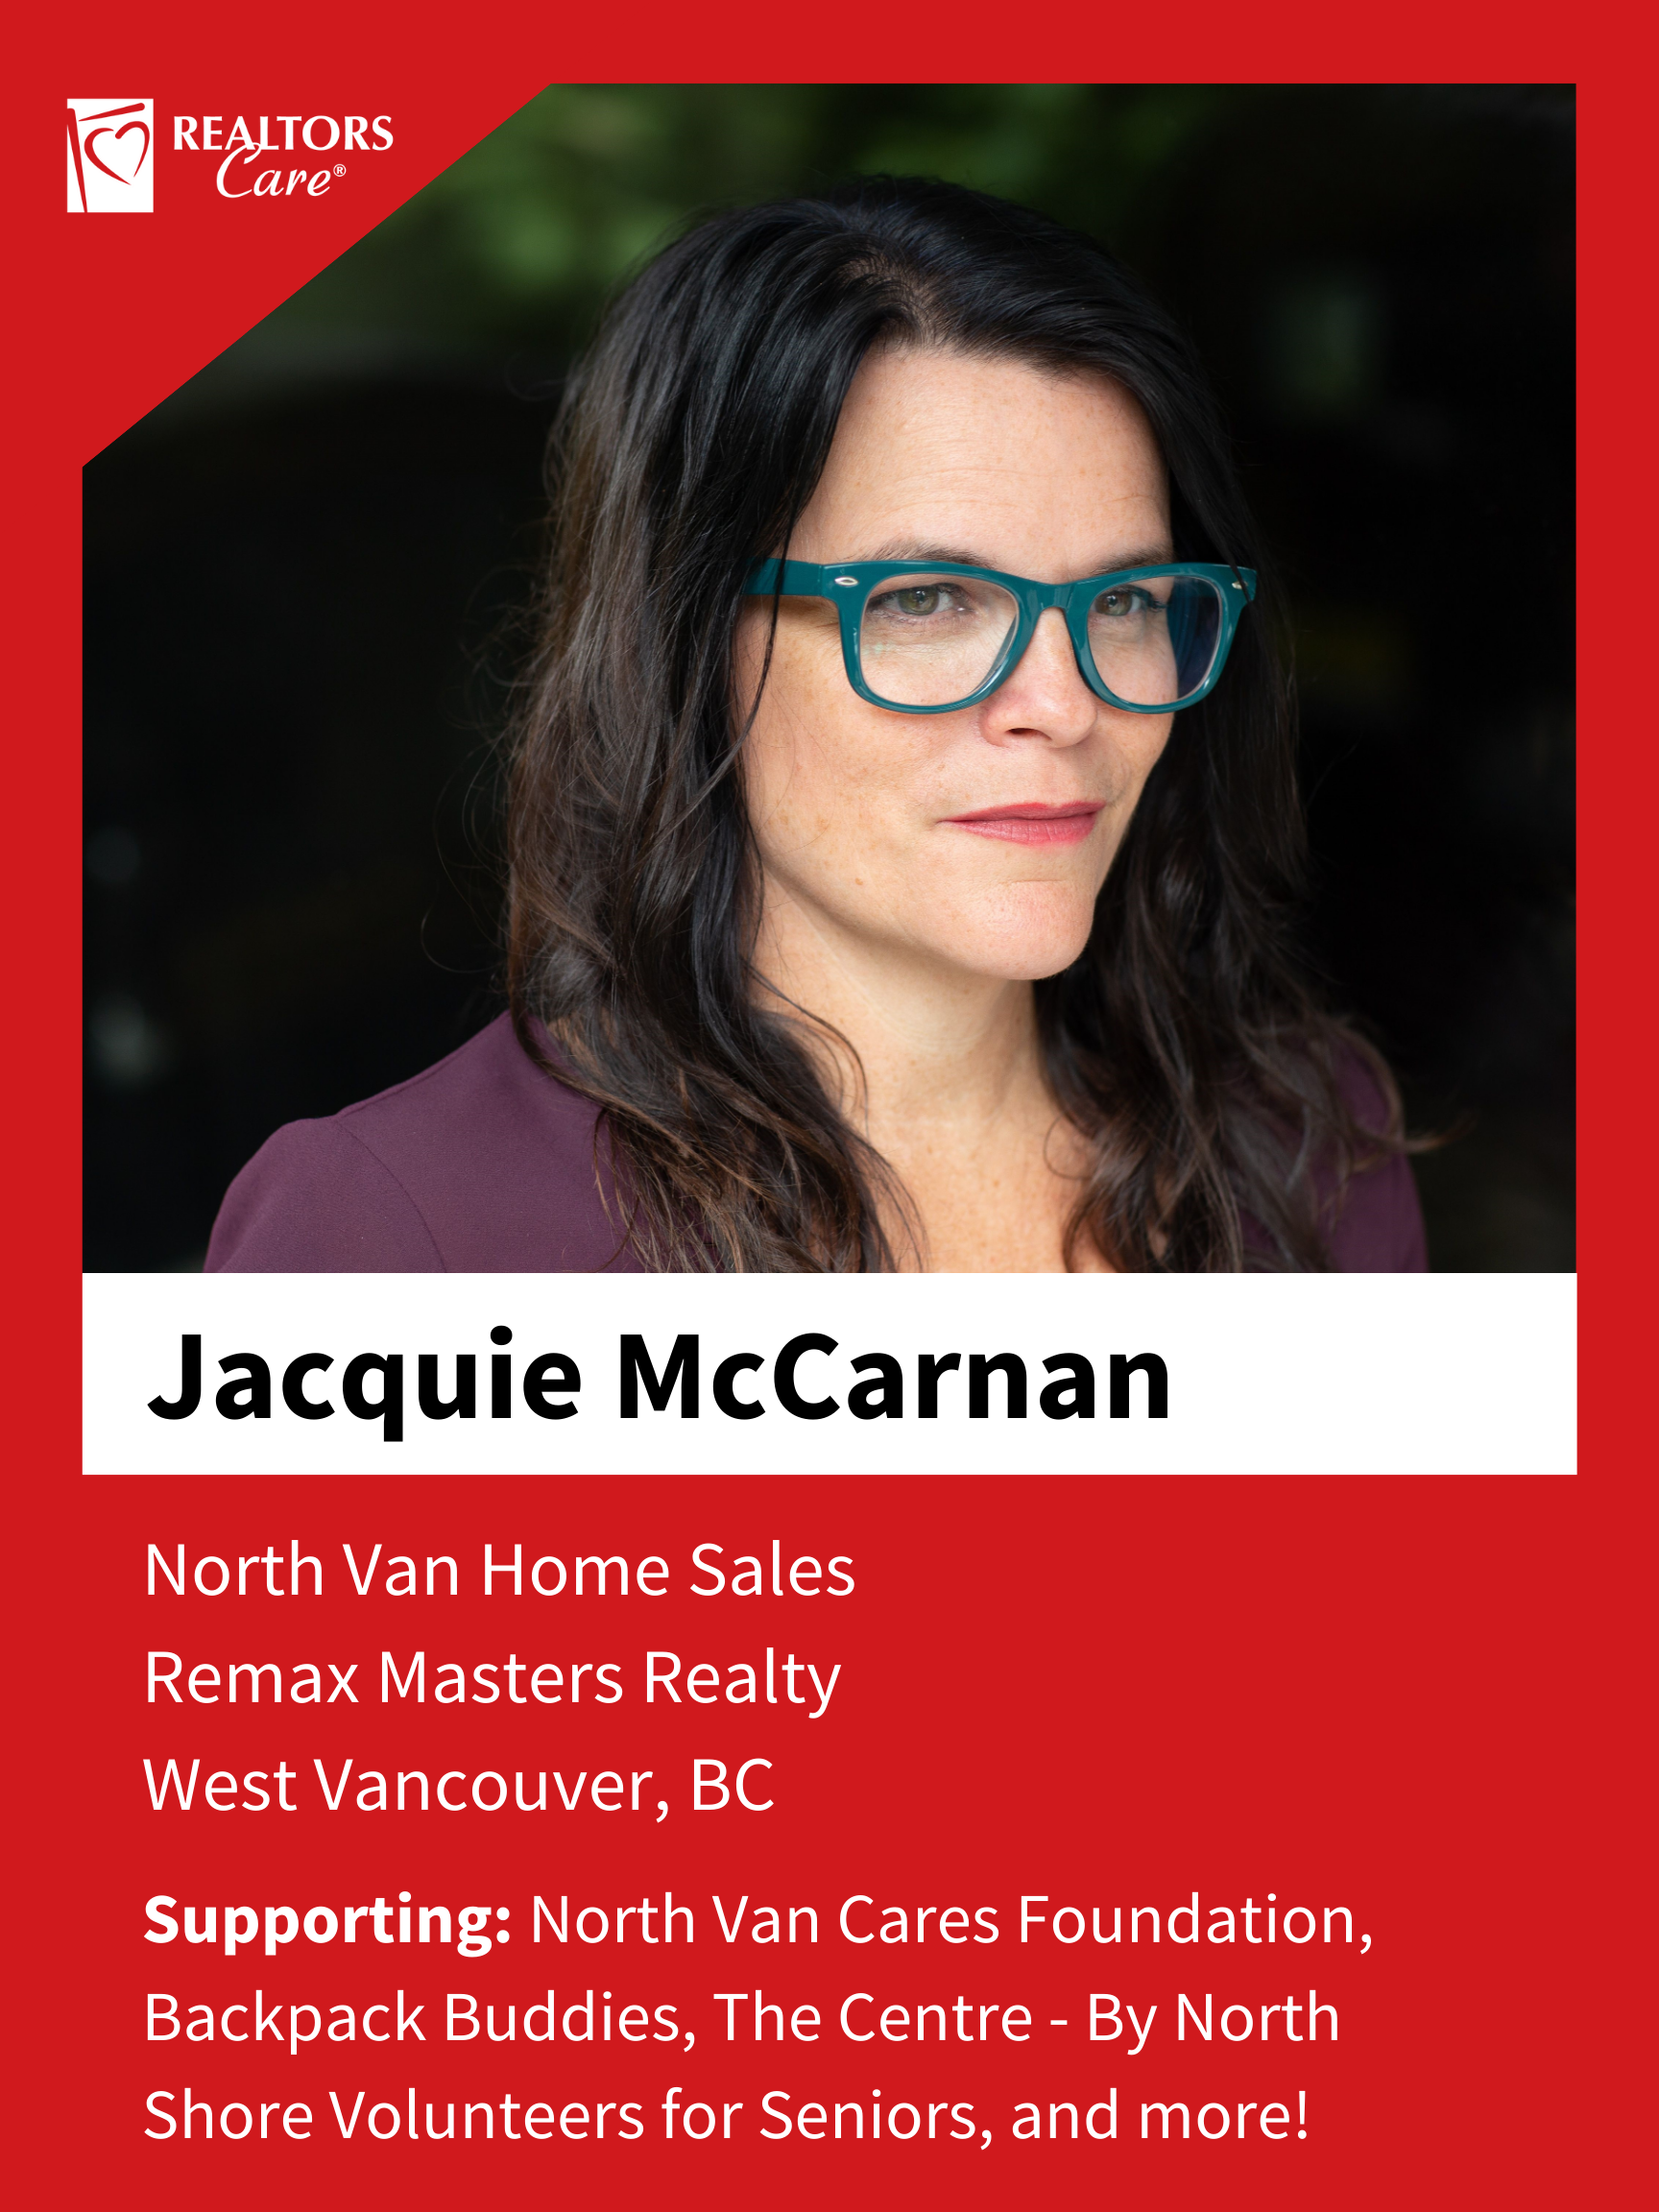 Jacquie McCarnan
West Vancouver	BC
